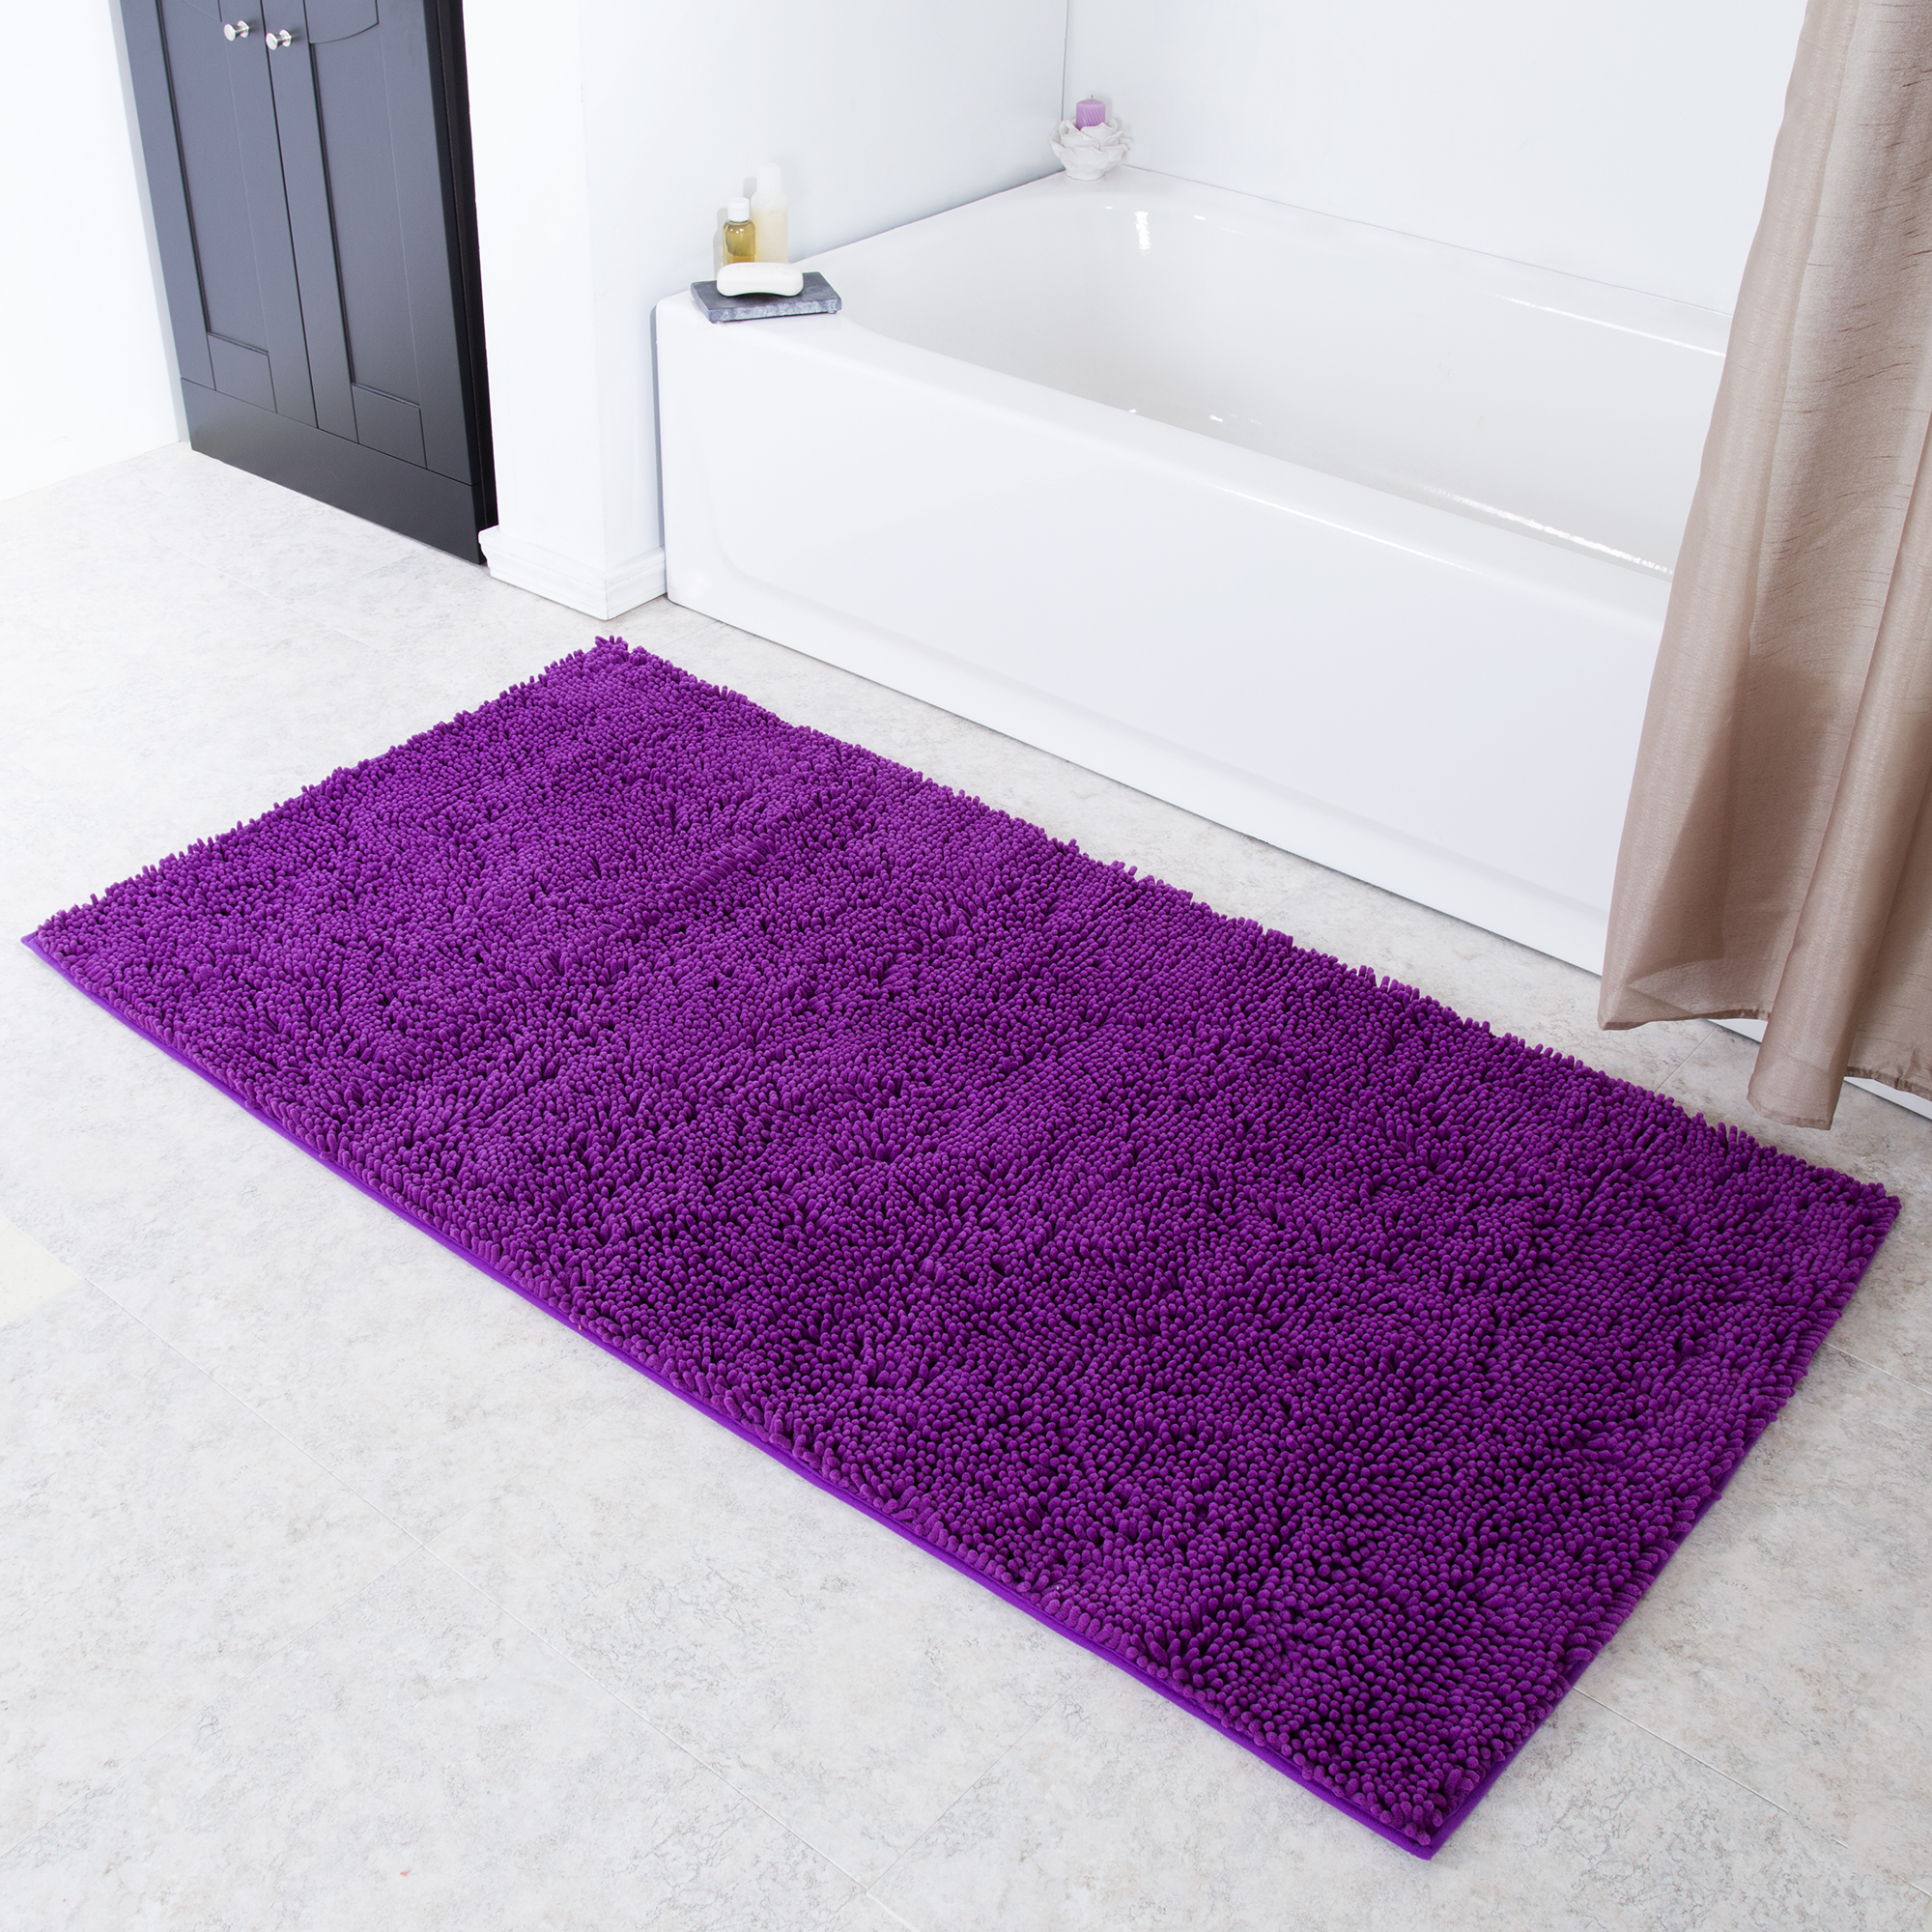 Lavish Home High Pile Shag Rug Carpet - Purple - 30x60